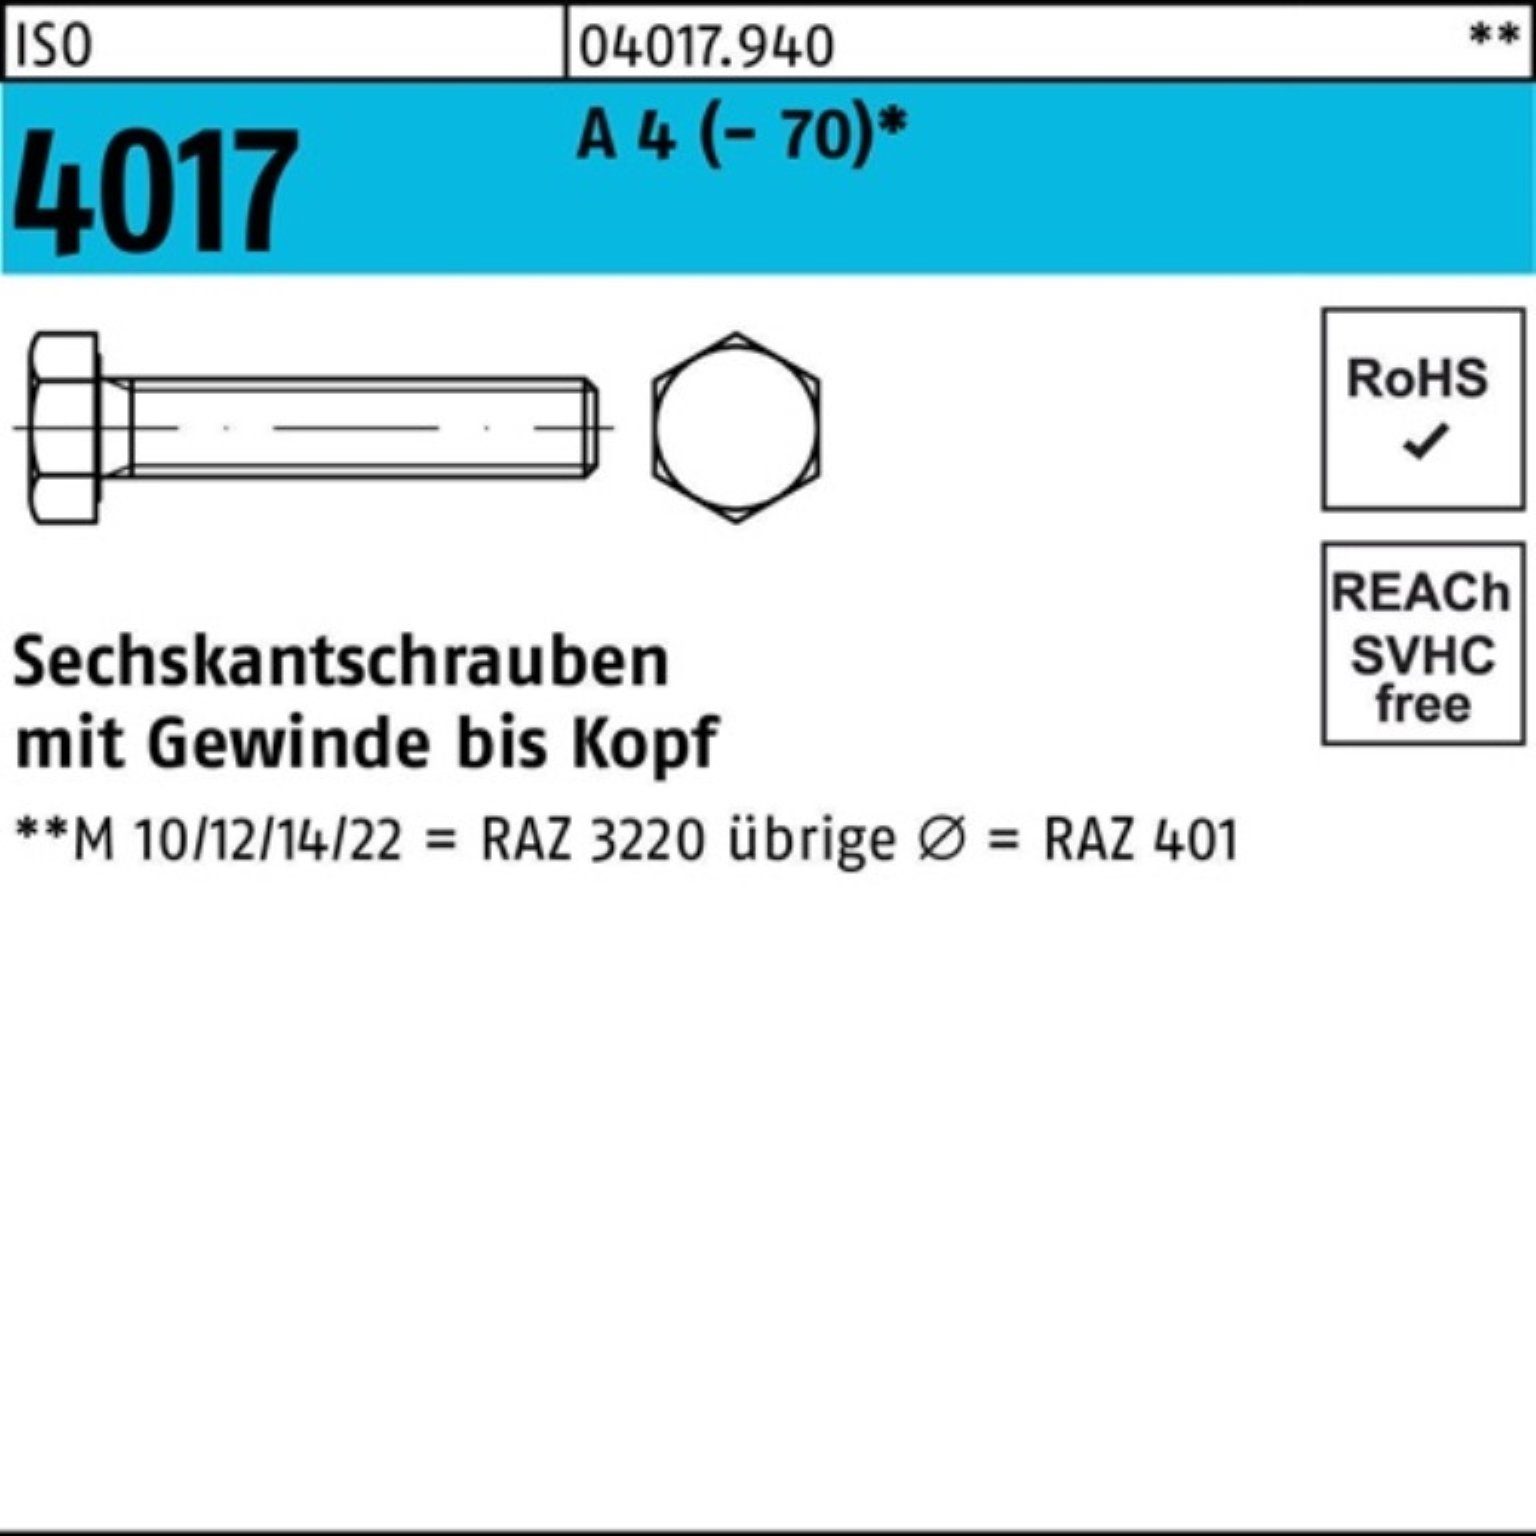 Bufab Sechskantschraube 100er Pack Sechskantschraube ISO 4017 VG M12x 30 A 4 (70) 100 Stück | Schrauben